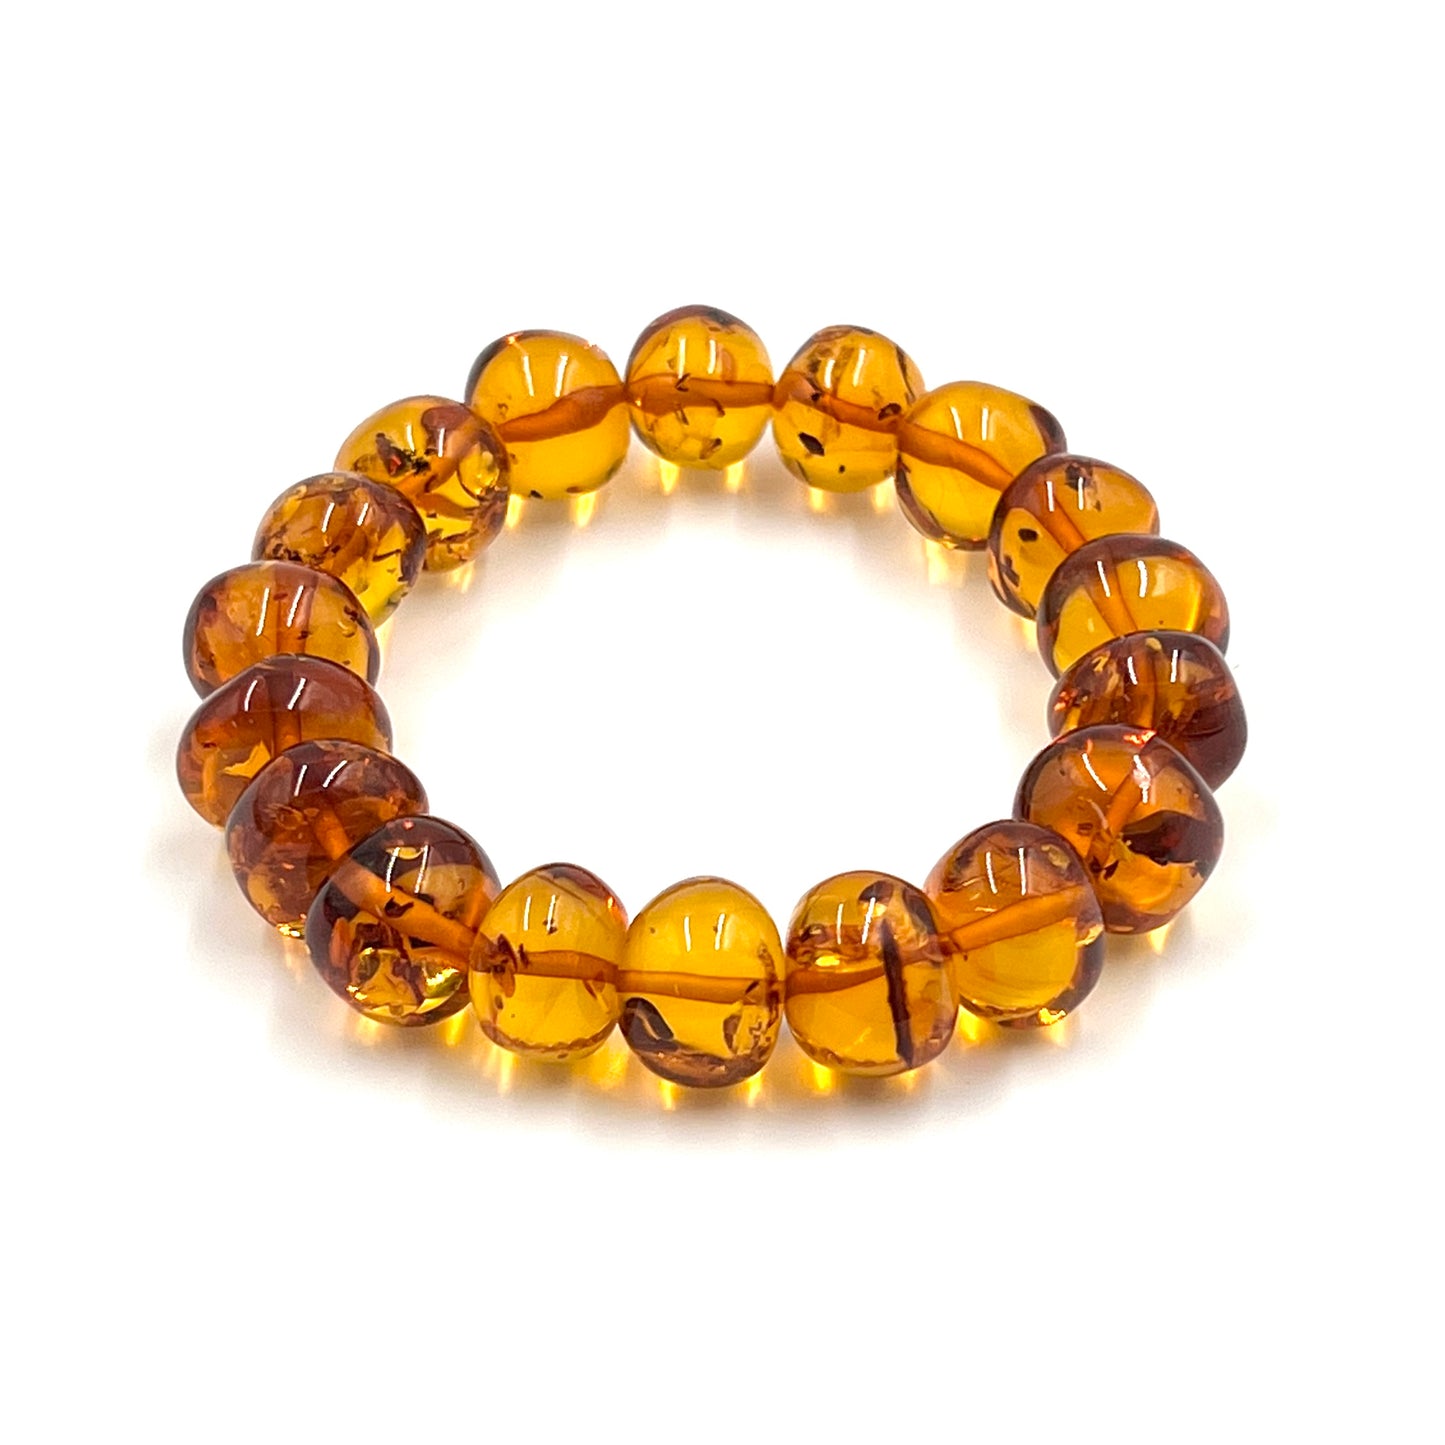 Large Polished Multi Amber Bracelets